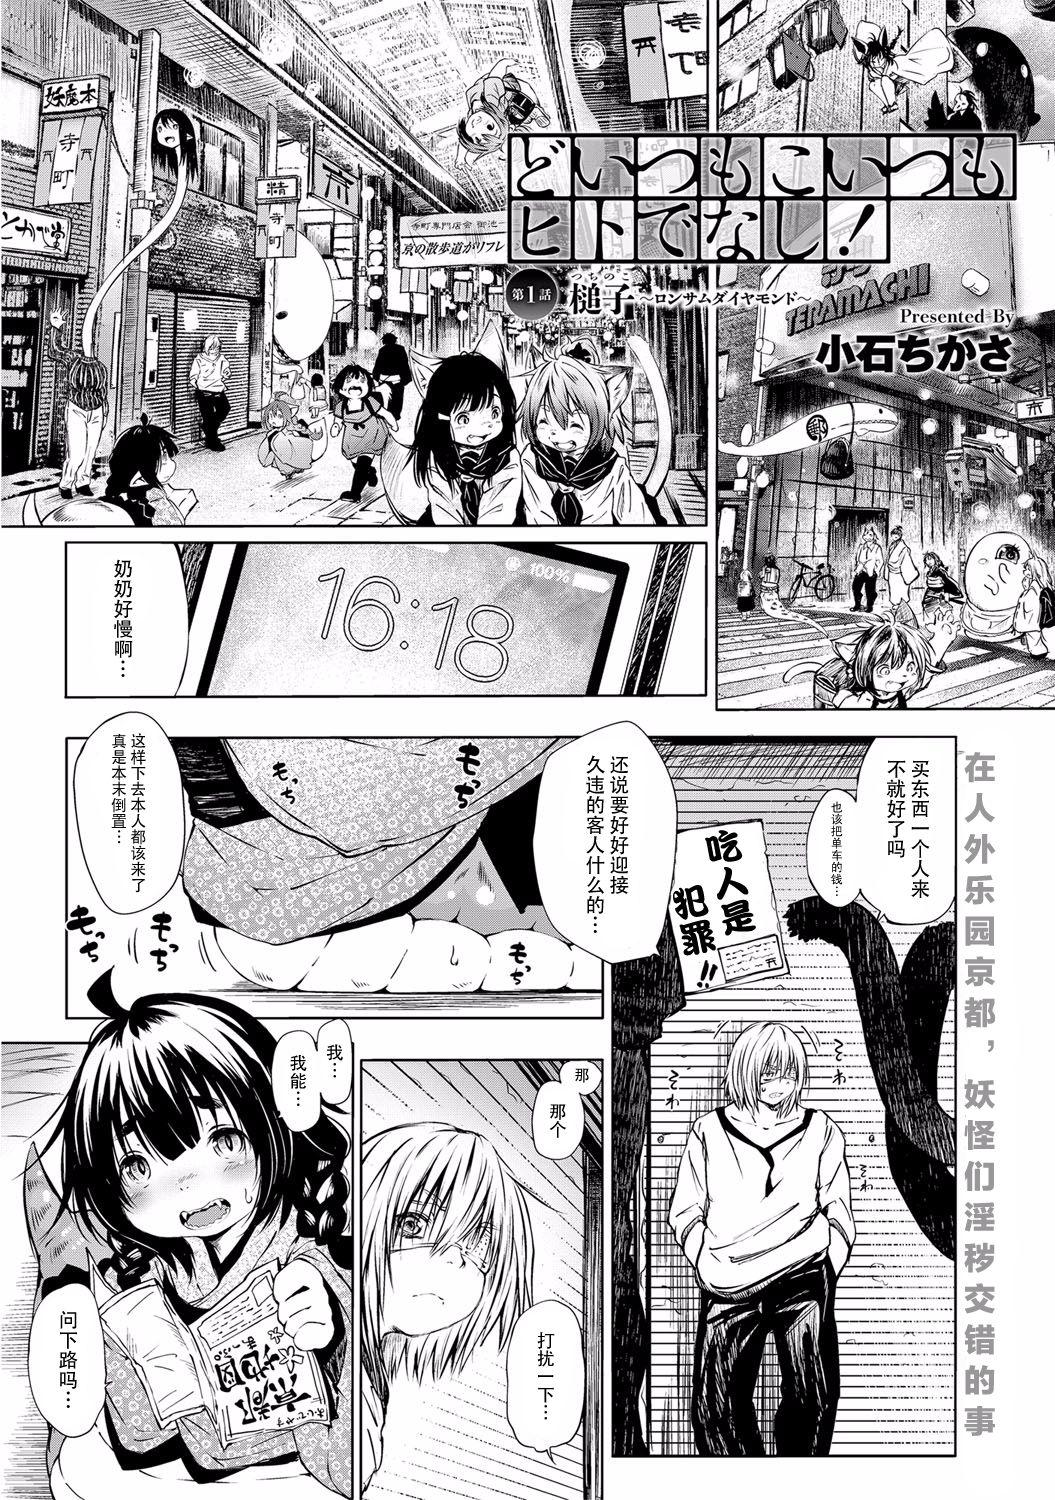 Pegging Doitsu mo Koitsu mo Hito de Nashi! Ch. 1 - Tsuchinoko Amazing - Page 2